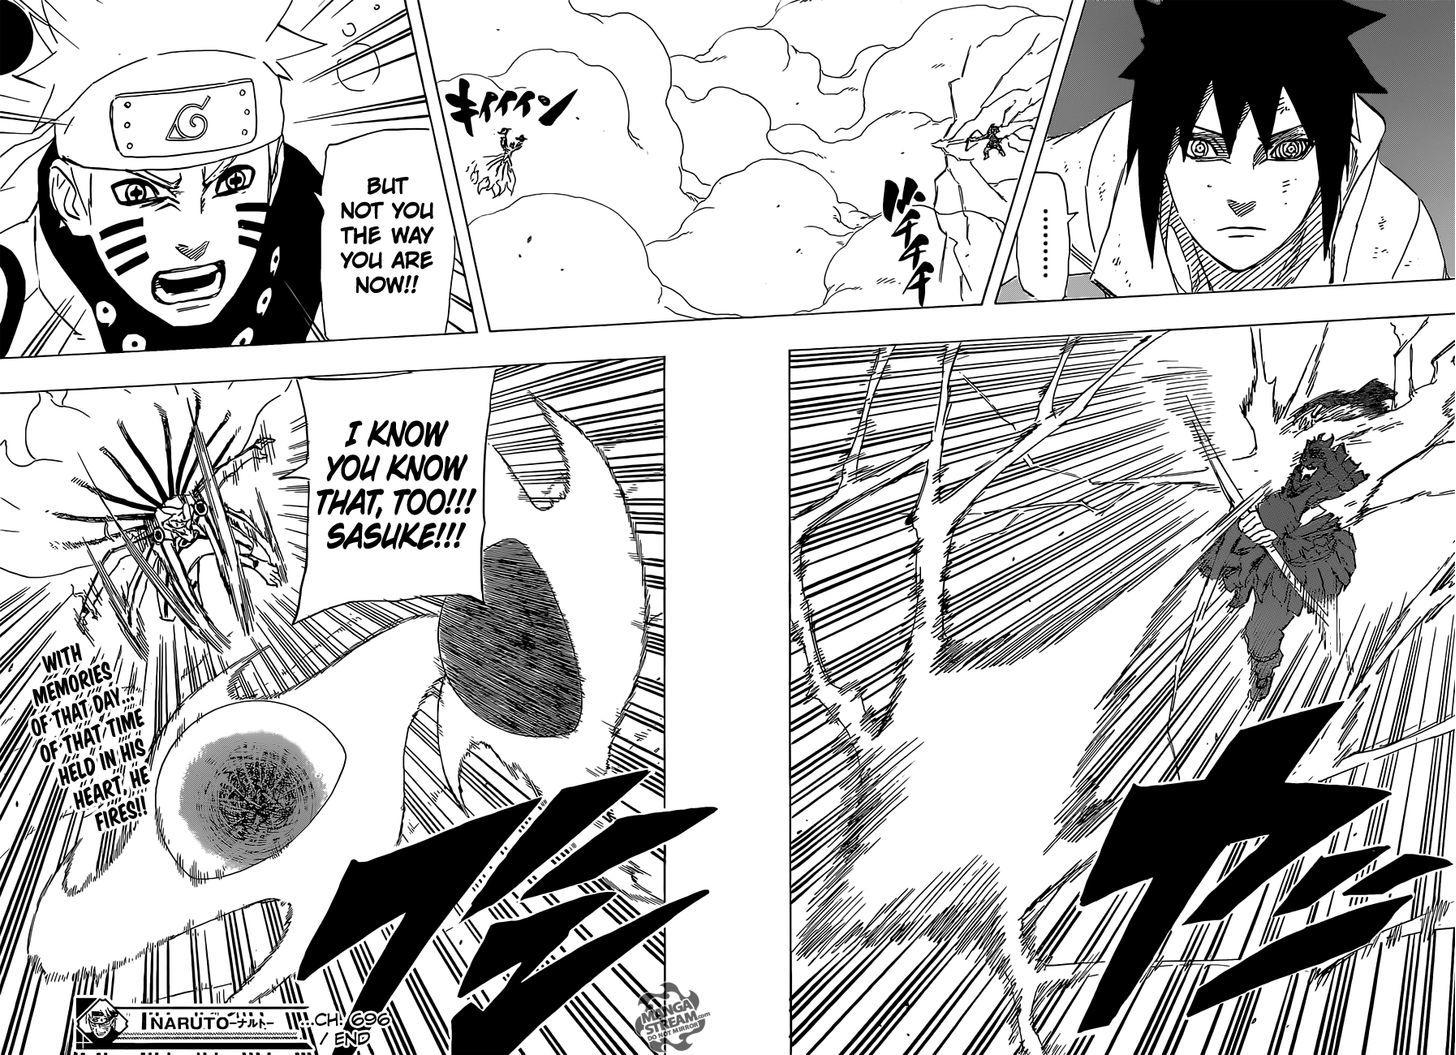 Vol.72 Chapter 696 – Naruto and Sasuke 3 | 16 page